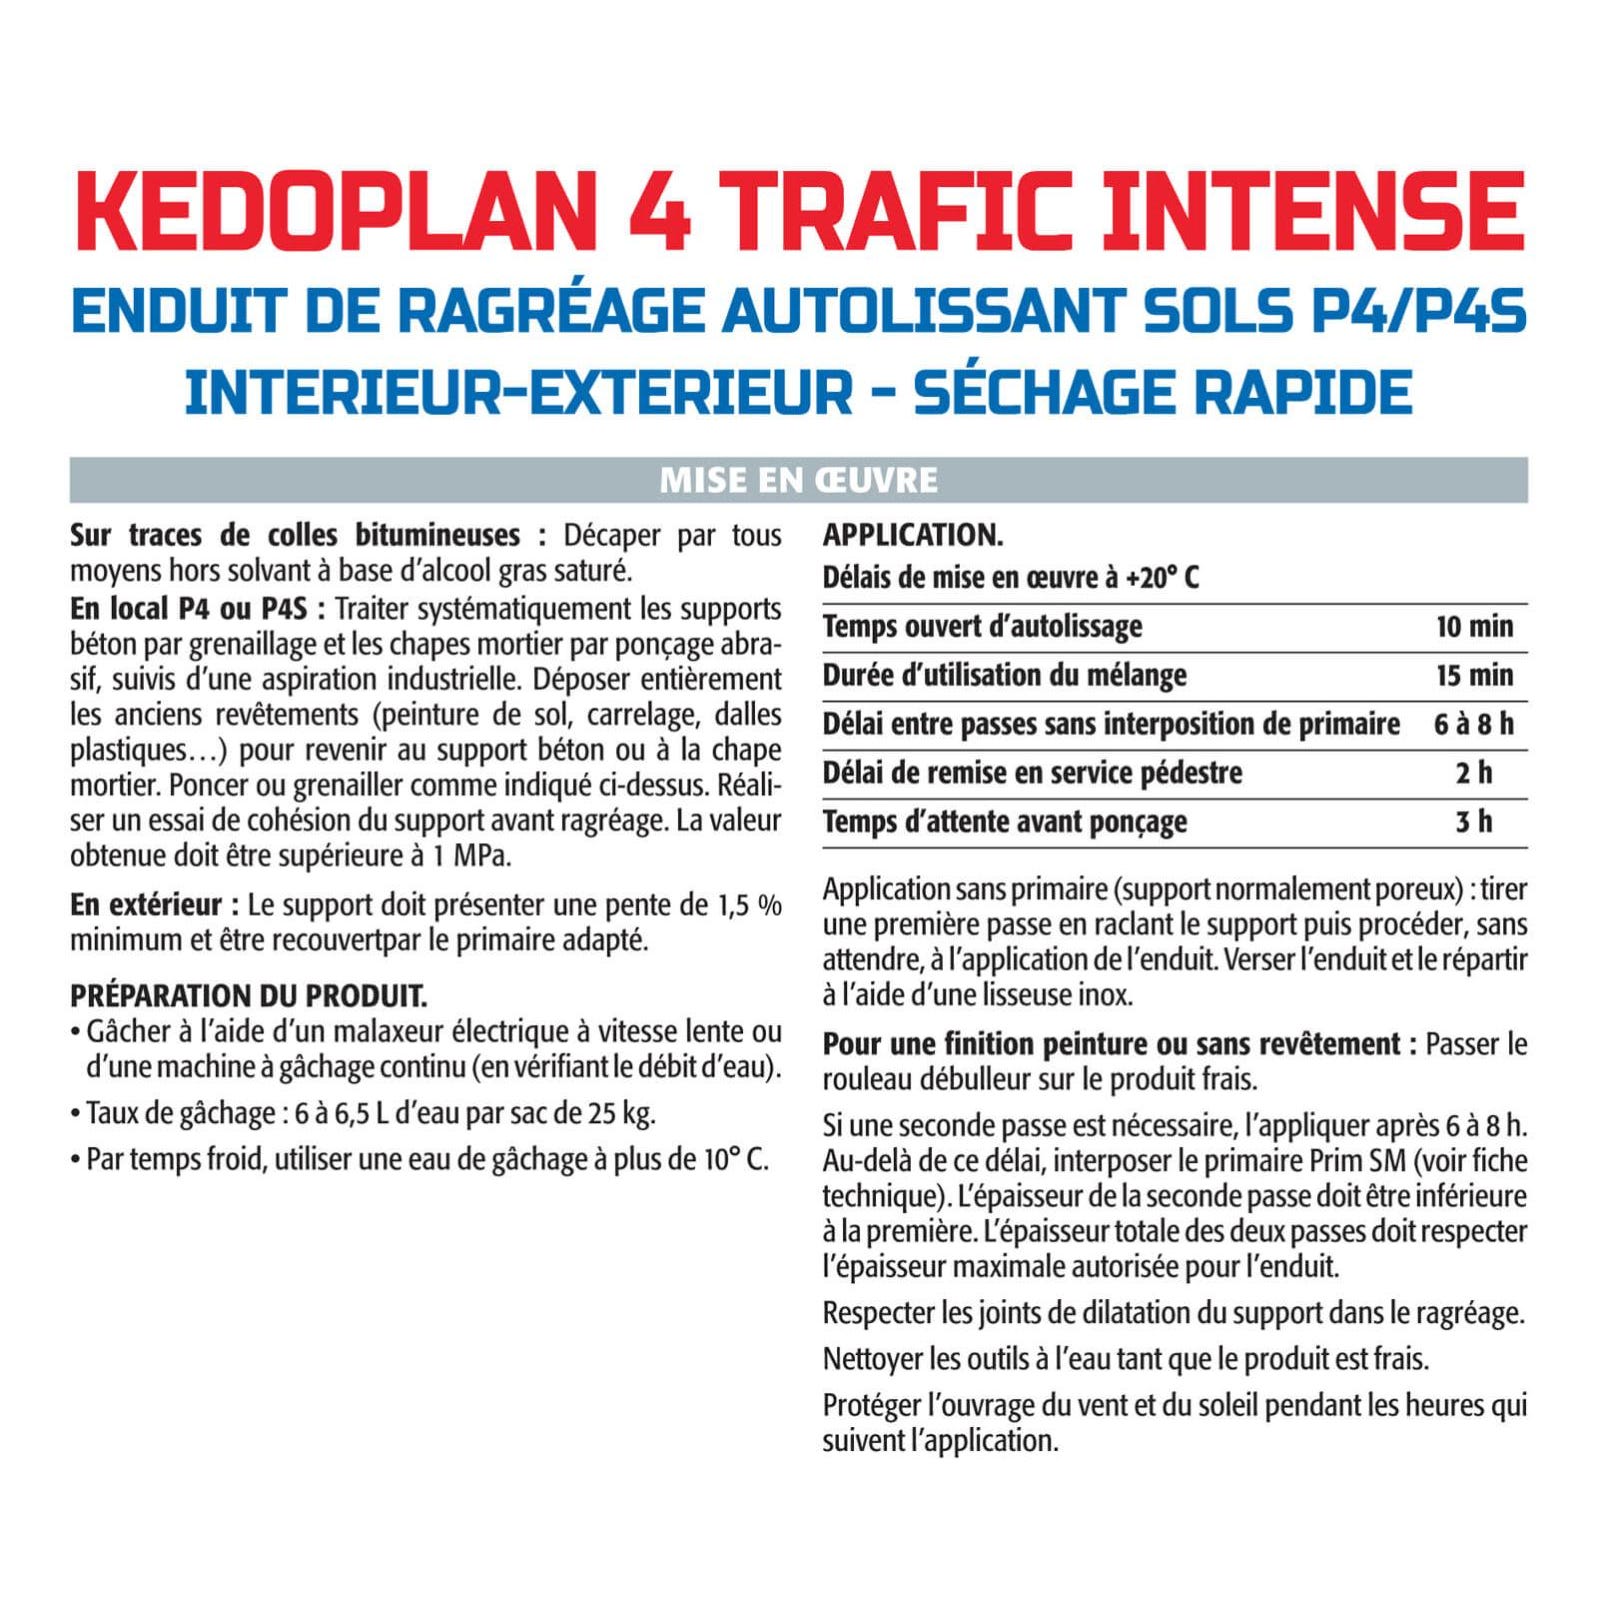 Semin - Enduit de Ragréage autolissant - Kedoplan 4 Traffic Intense - Intérieur/Extérieur - Sac 25 kg 3